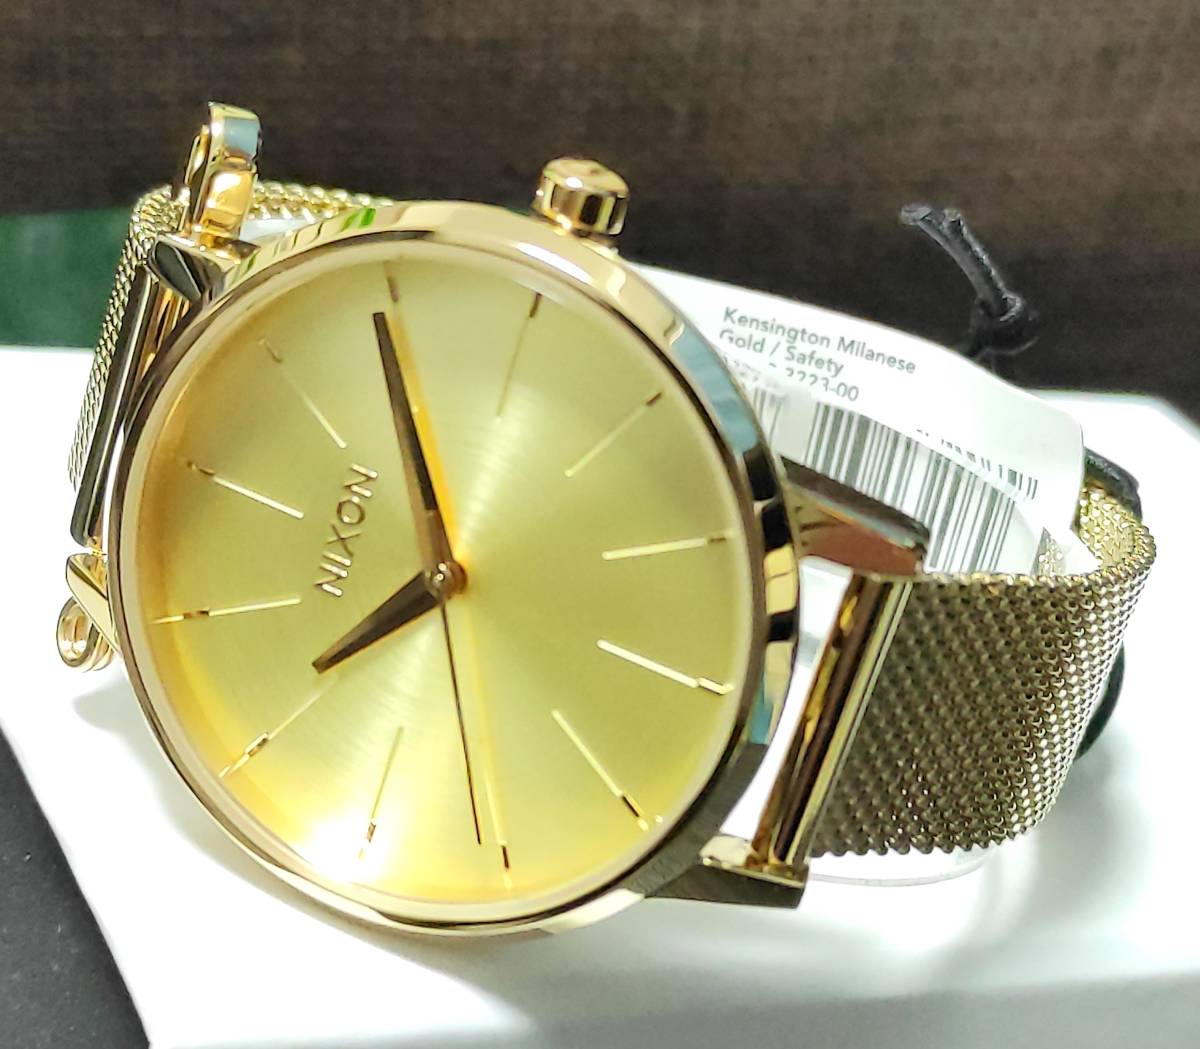 [ новый товар ]NIXON Nixon наручные часы KENSINGTON MILANESE kensington Mira ne-ze желтое золото очень редкий мертвый запас UNISEX